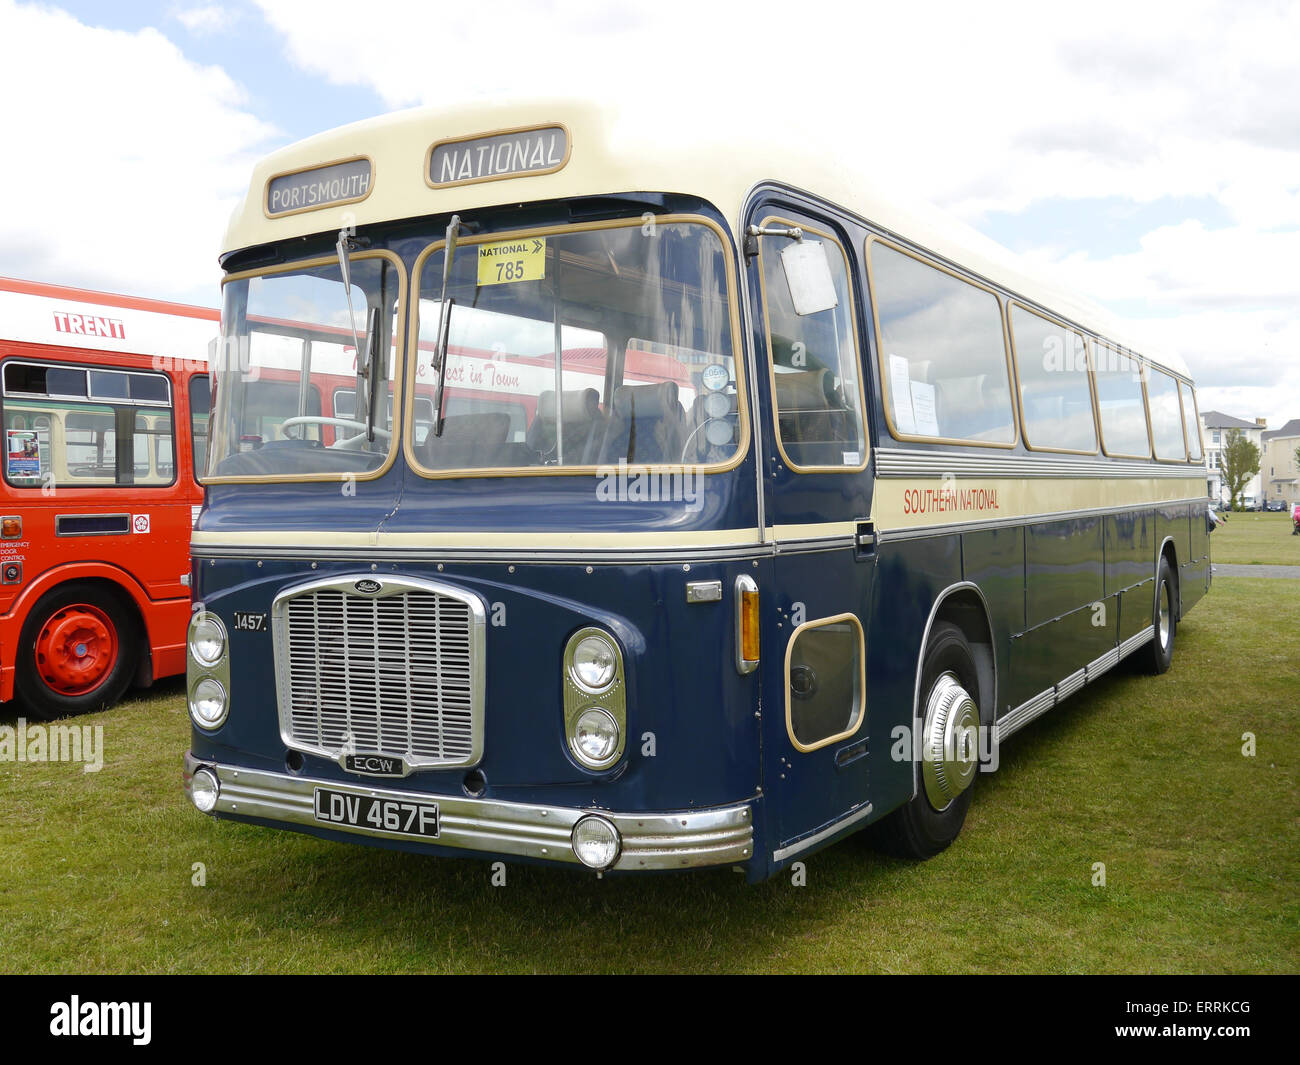 Bristol Reliant H in blu royal registrazione livrea LDV 467F Foto Stock